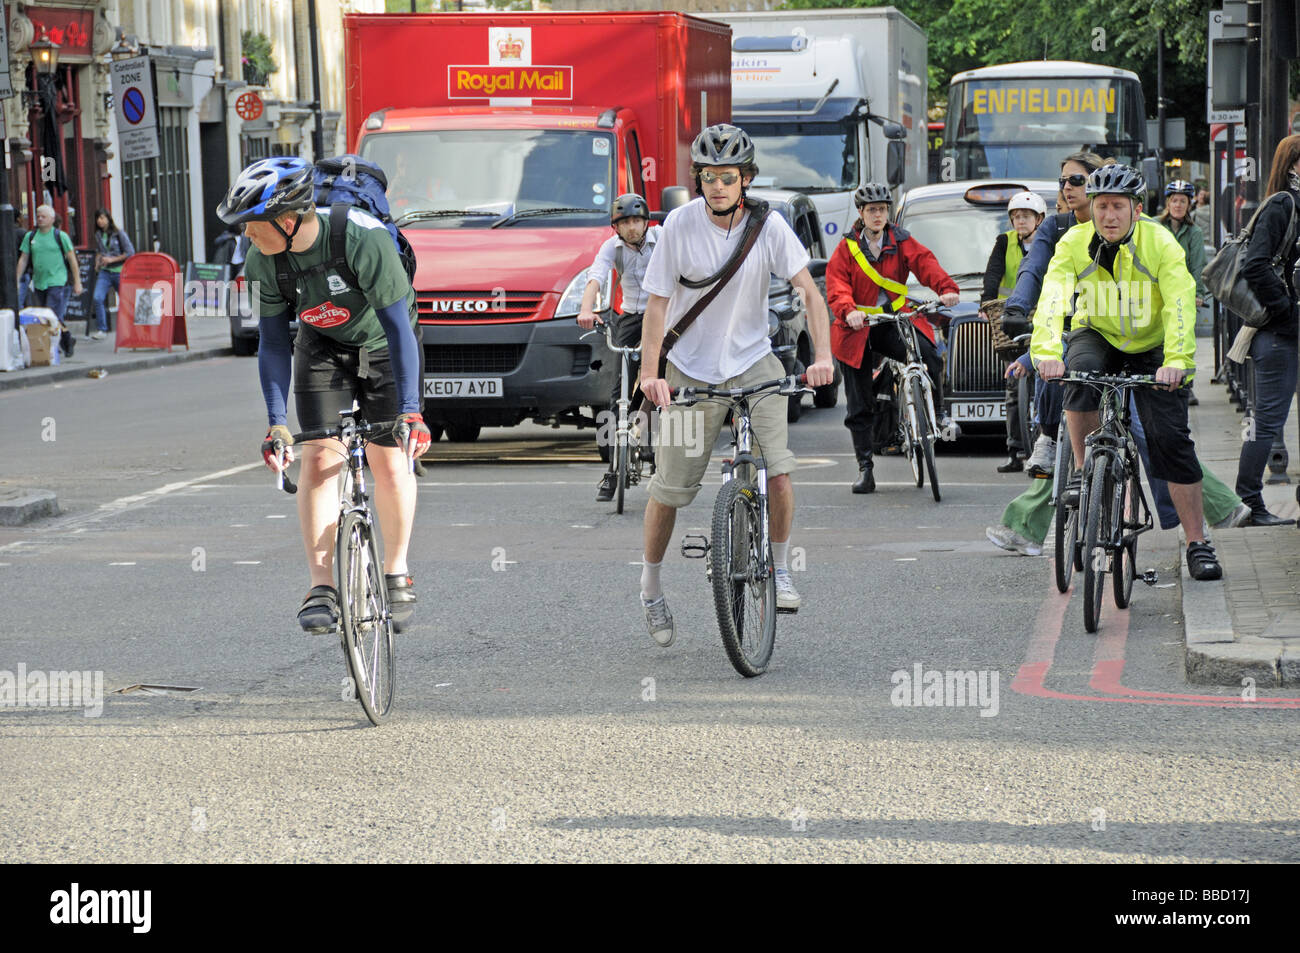 Les cyclistes à l'heure de pointe Angel Islington Londres Angleterre Royaume-uni Banque D'Images